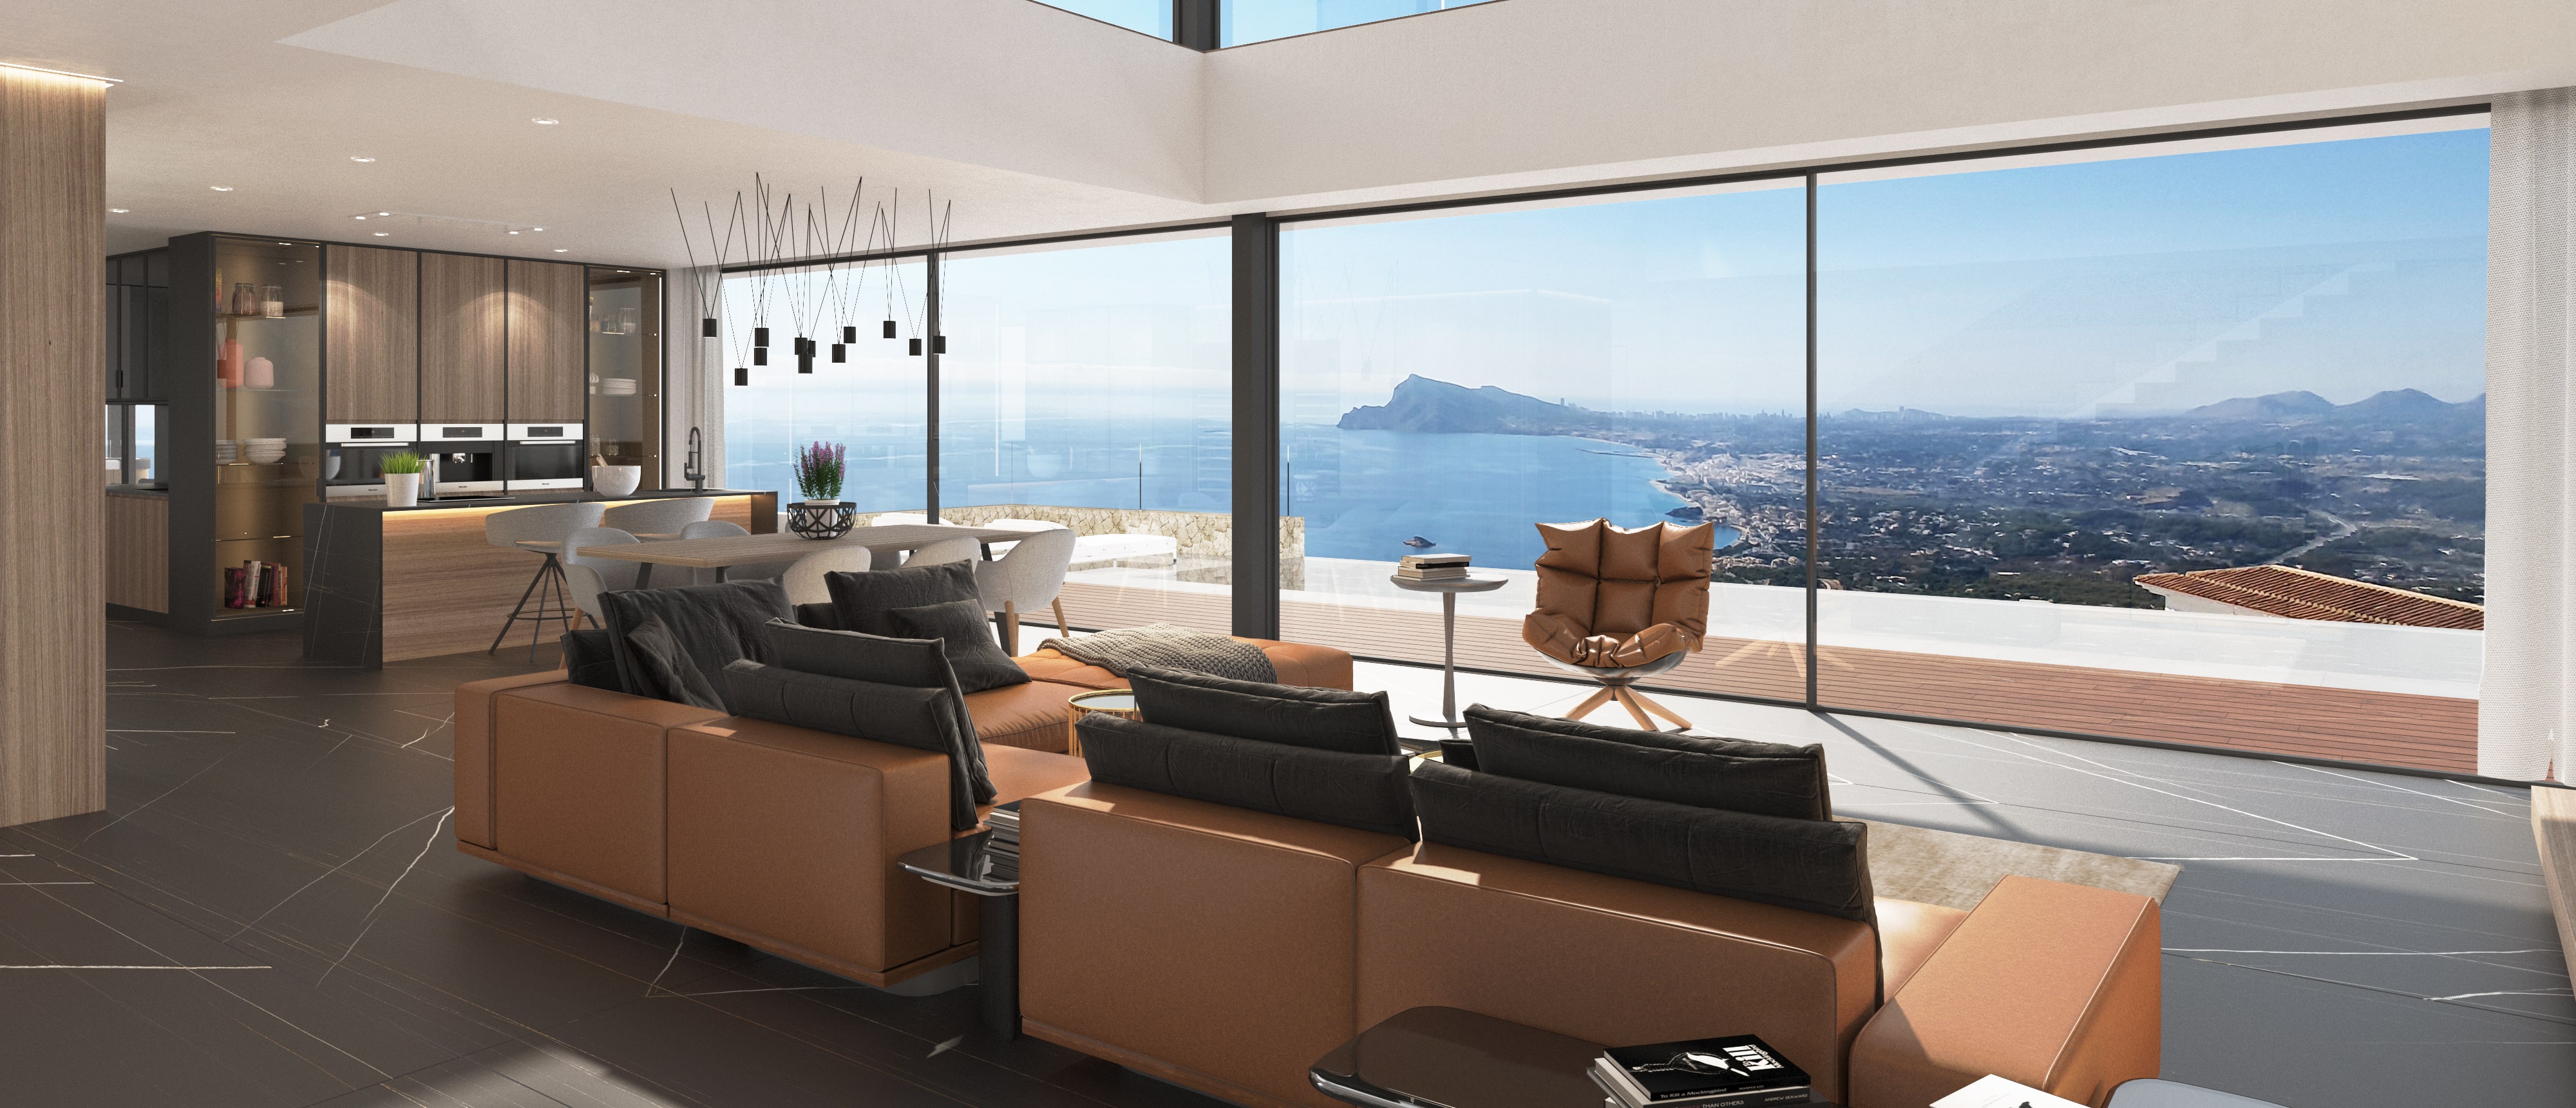 Prachtige luxe villa van design met een adembenemend uitzicht op de zee